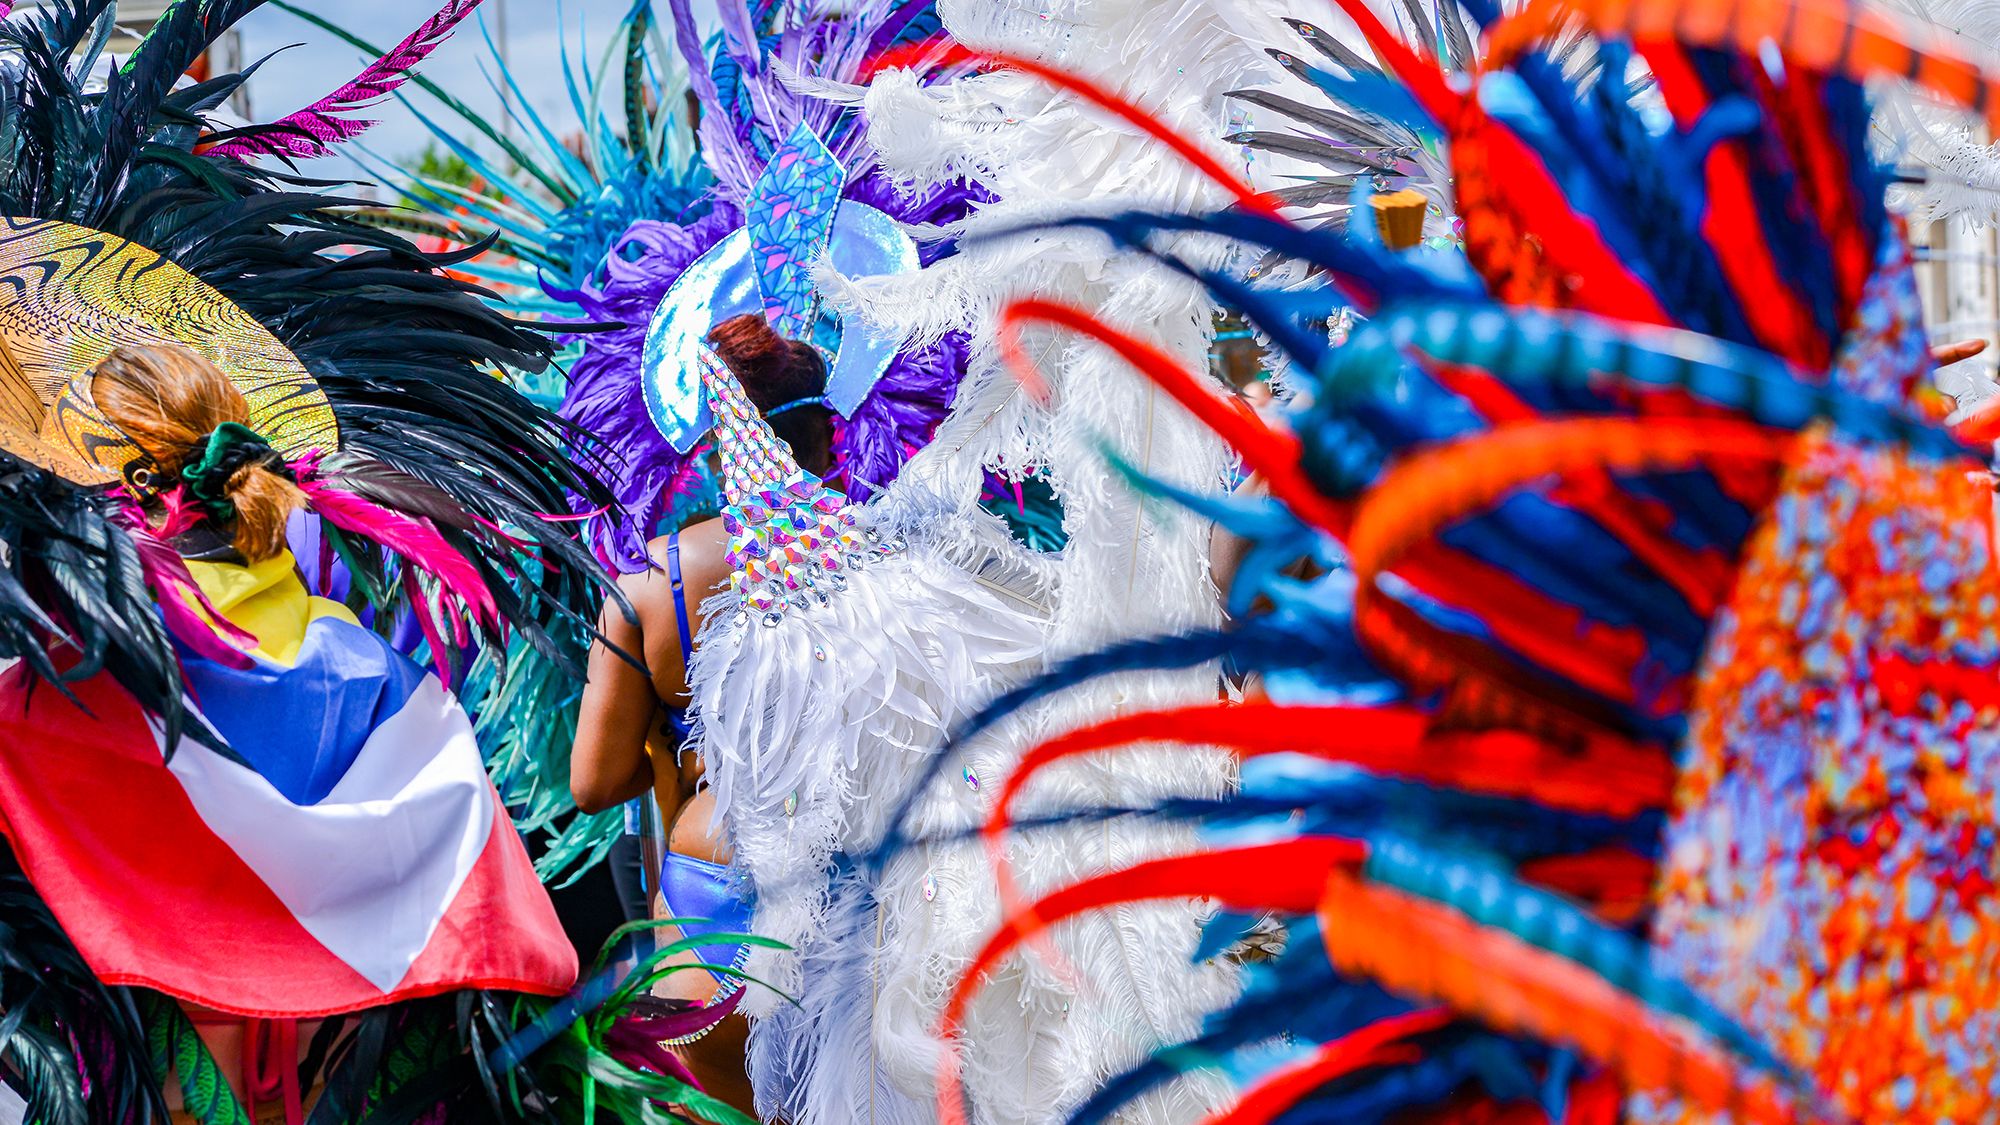 Antigua Carnival Costume Parade